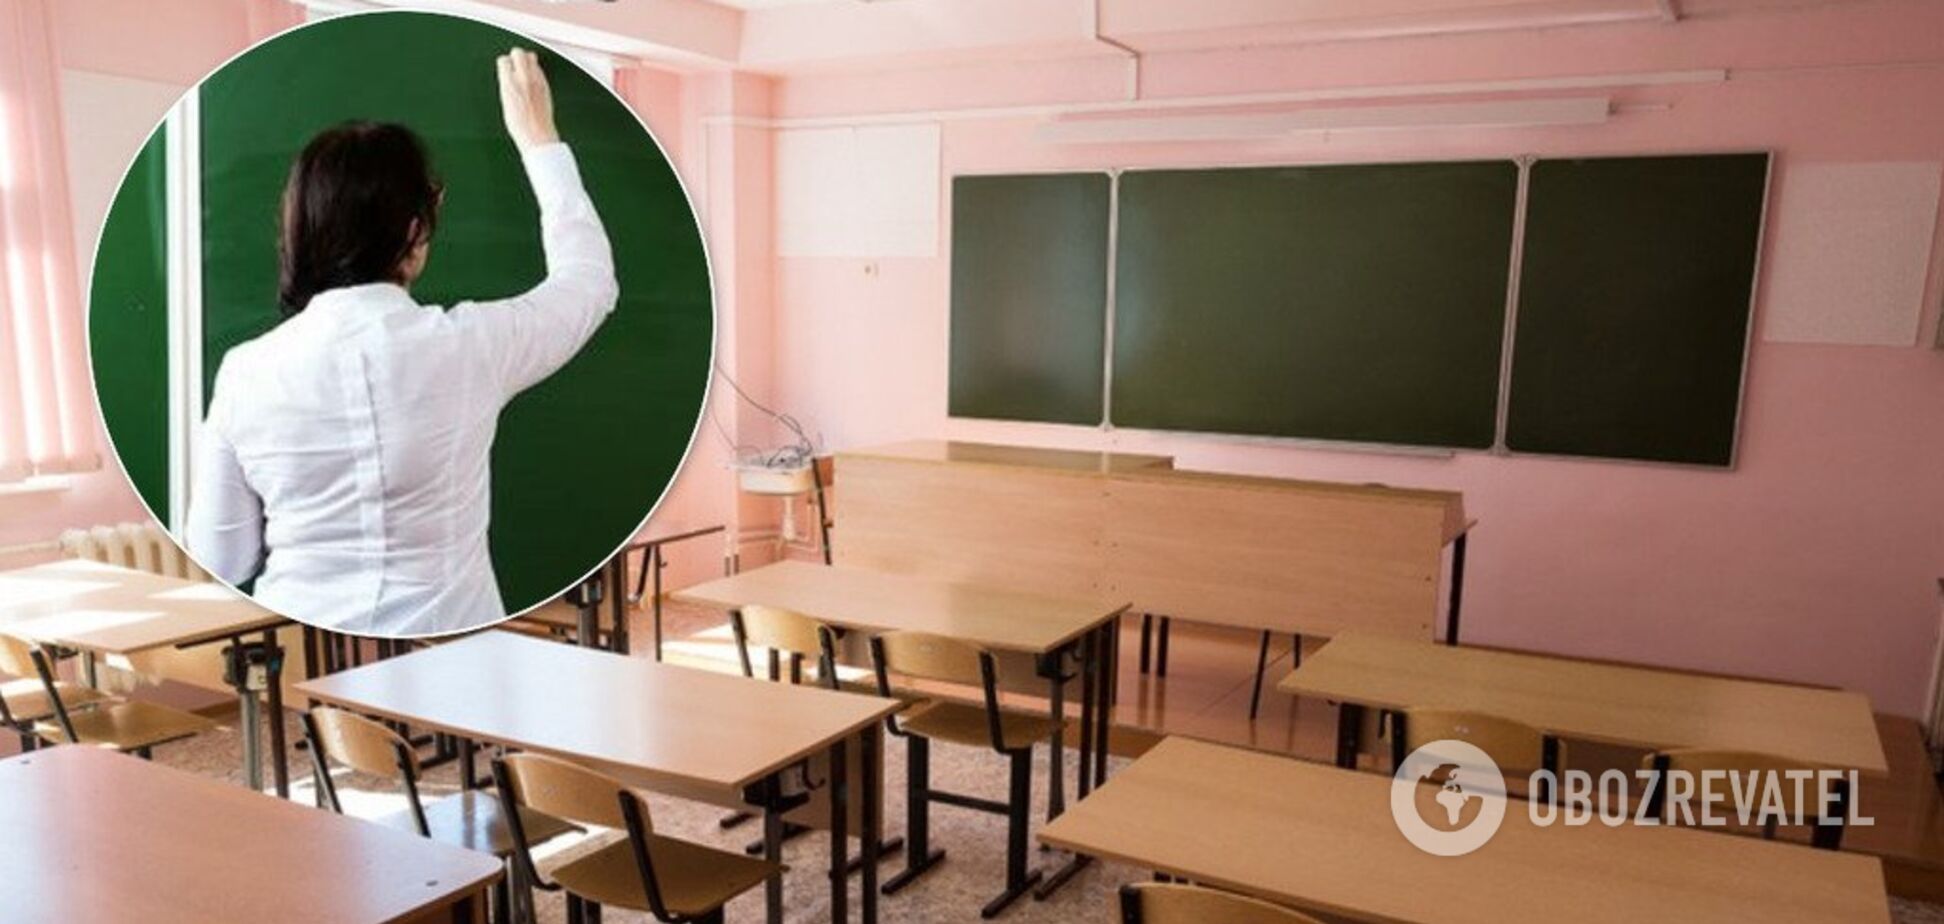 Учительницу из Астрахани заподозрили в сексе с 15-летним школьником